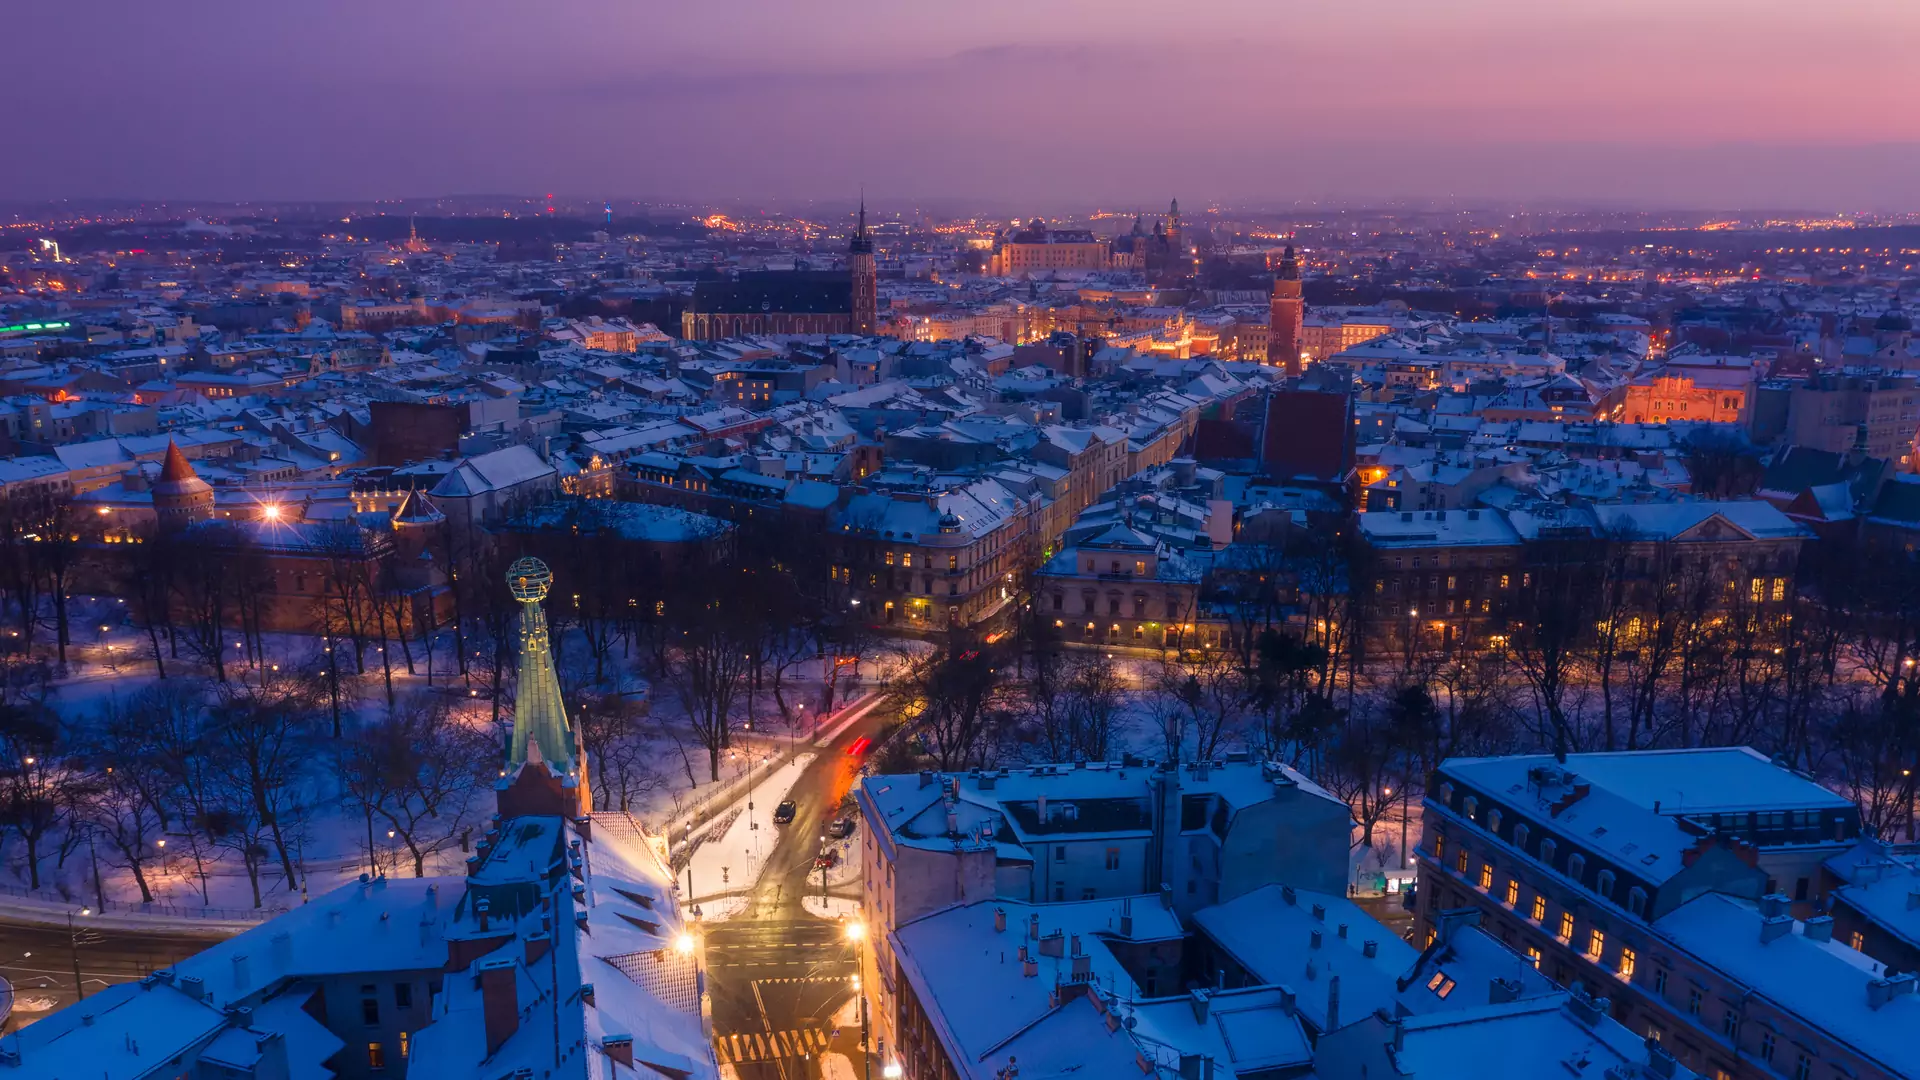 Wygrywamy ranking. Polskie miasto najlepszym miejscem na zimowy urlop w Europie